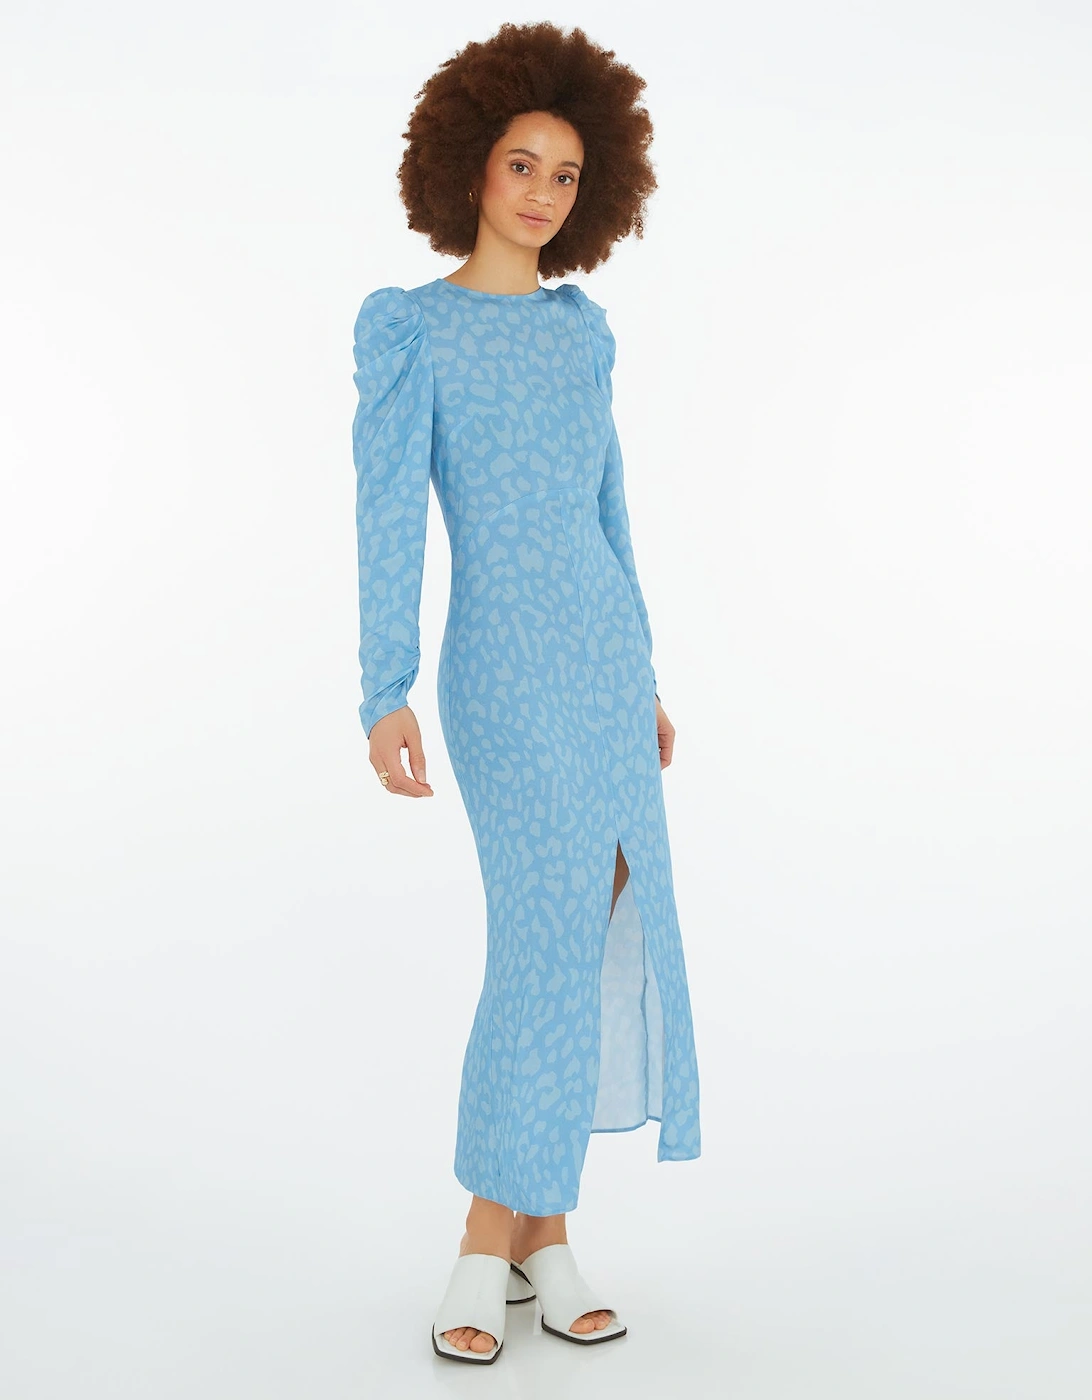 Marie Tea Dress in Blue Cheetah Print